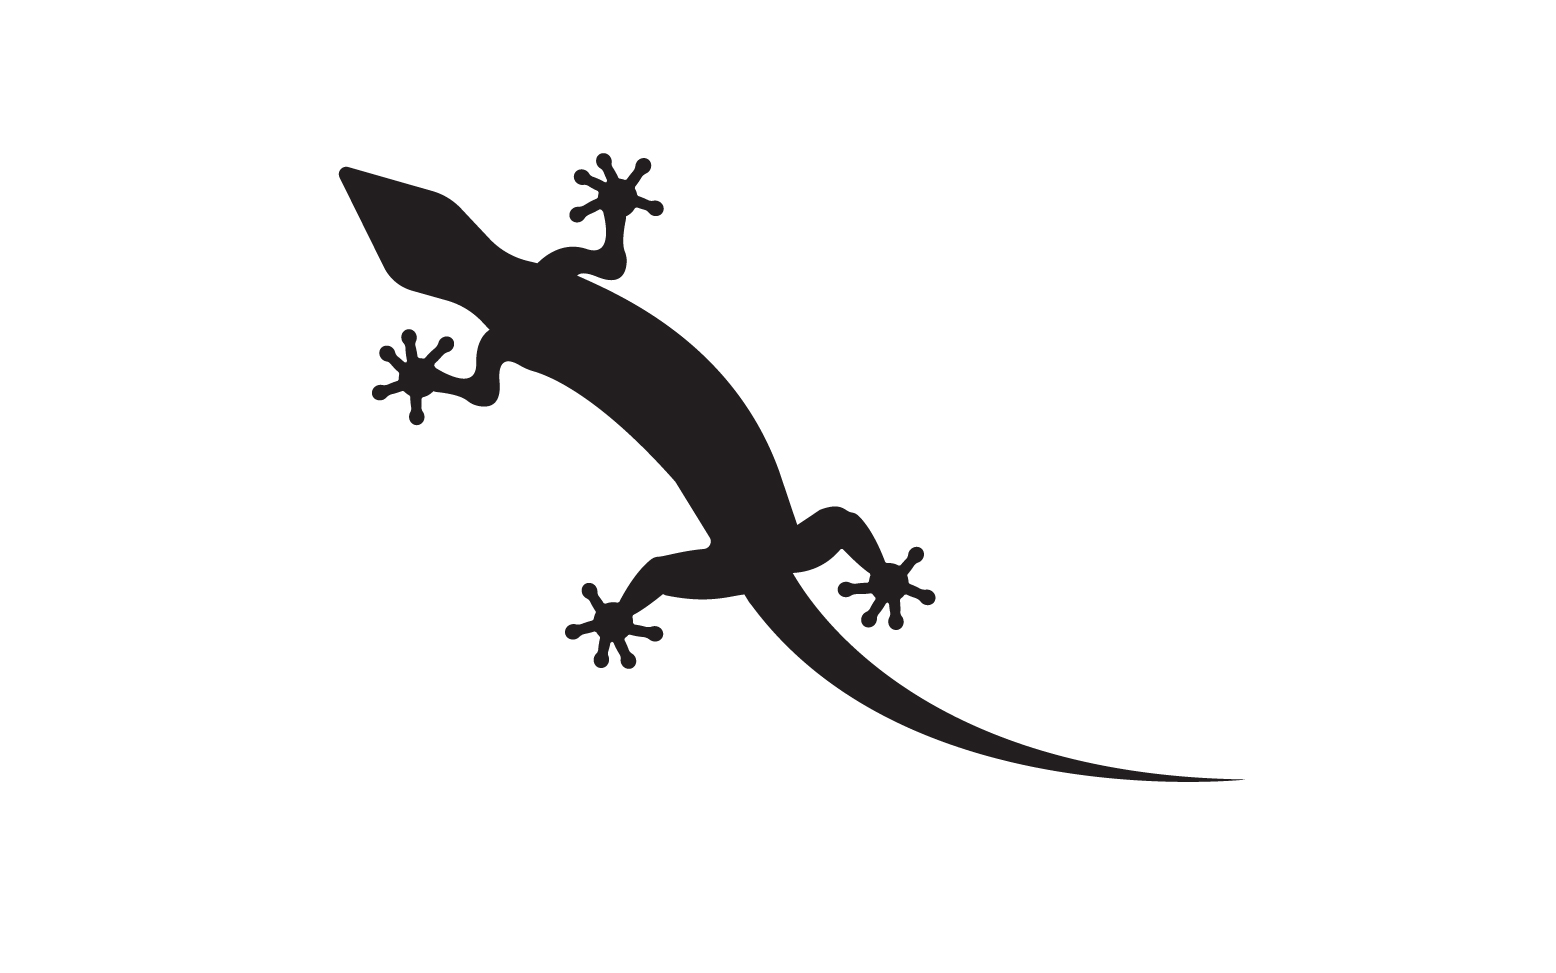 Lizard chameleon home lizard logo v46